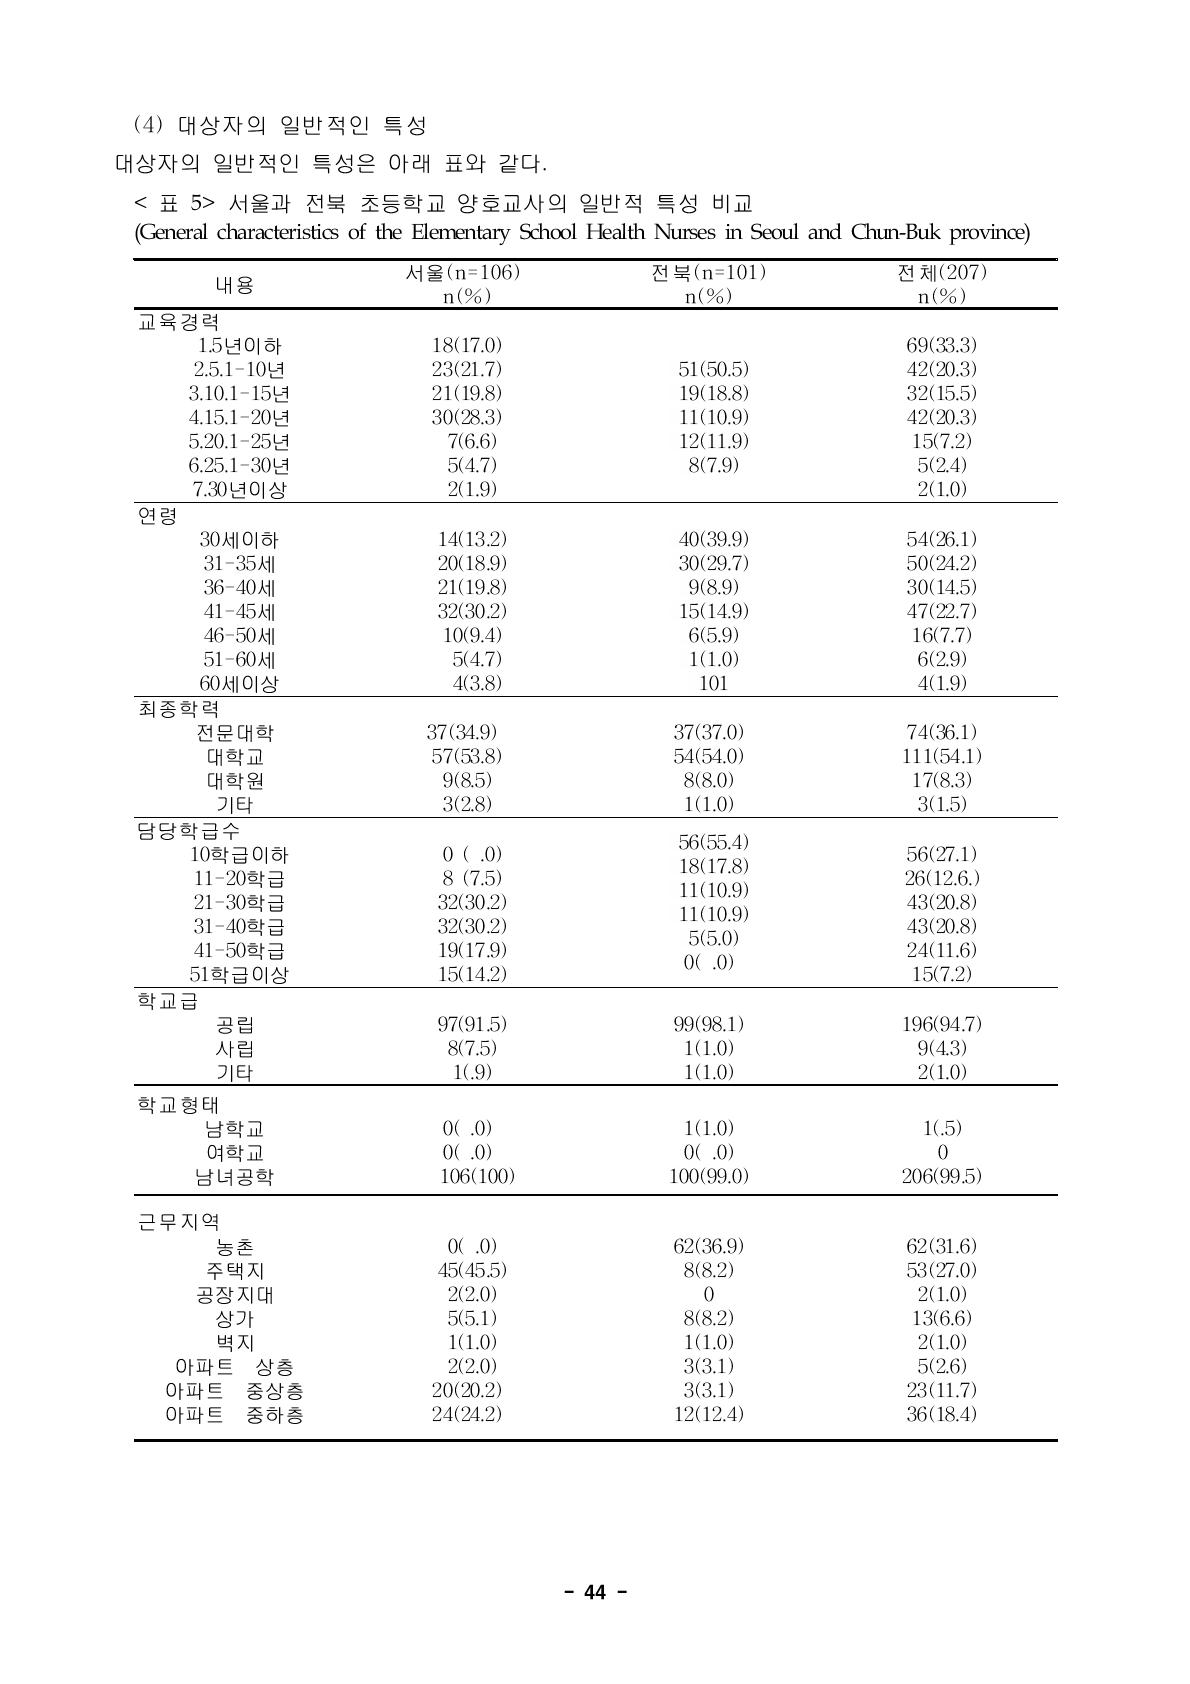 서울과 전북 초등학교 양호교사의 일반적 특성 비교(General characteristics of the Elementary School Health Nurses in Seoul and Chun-Buk province)